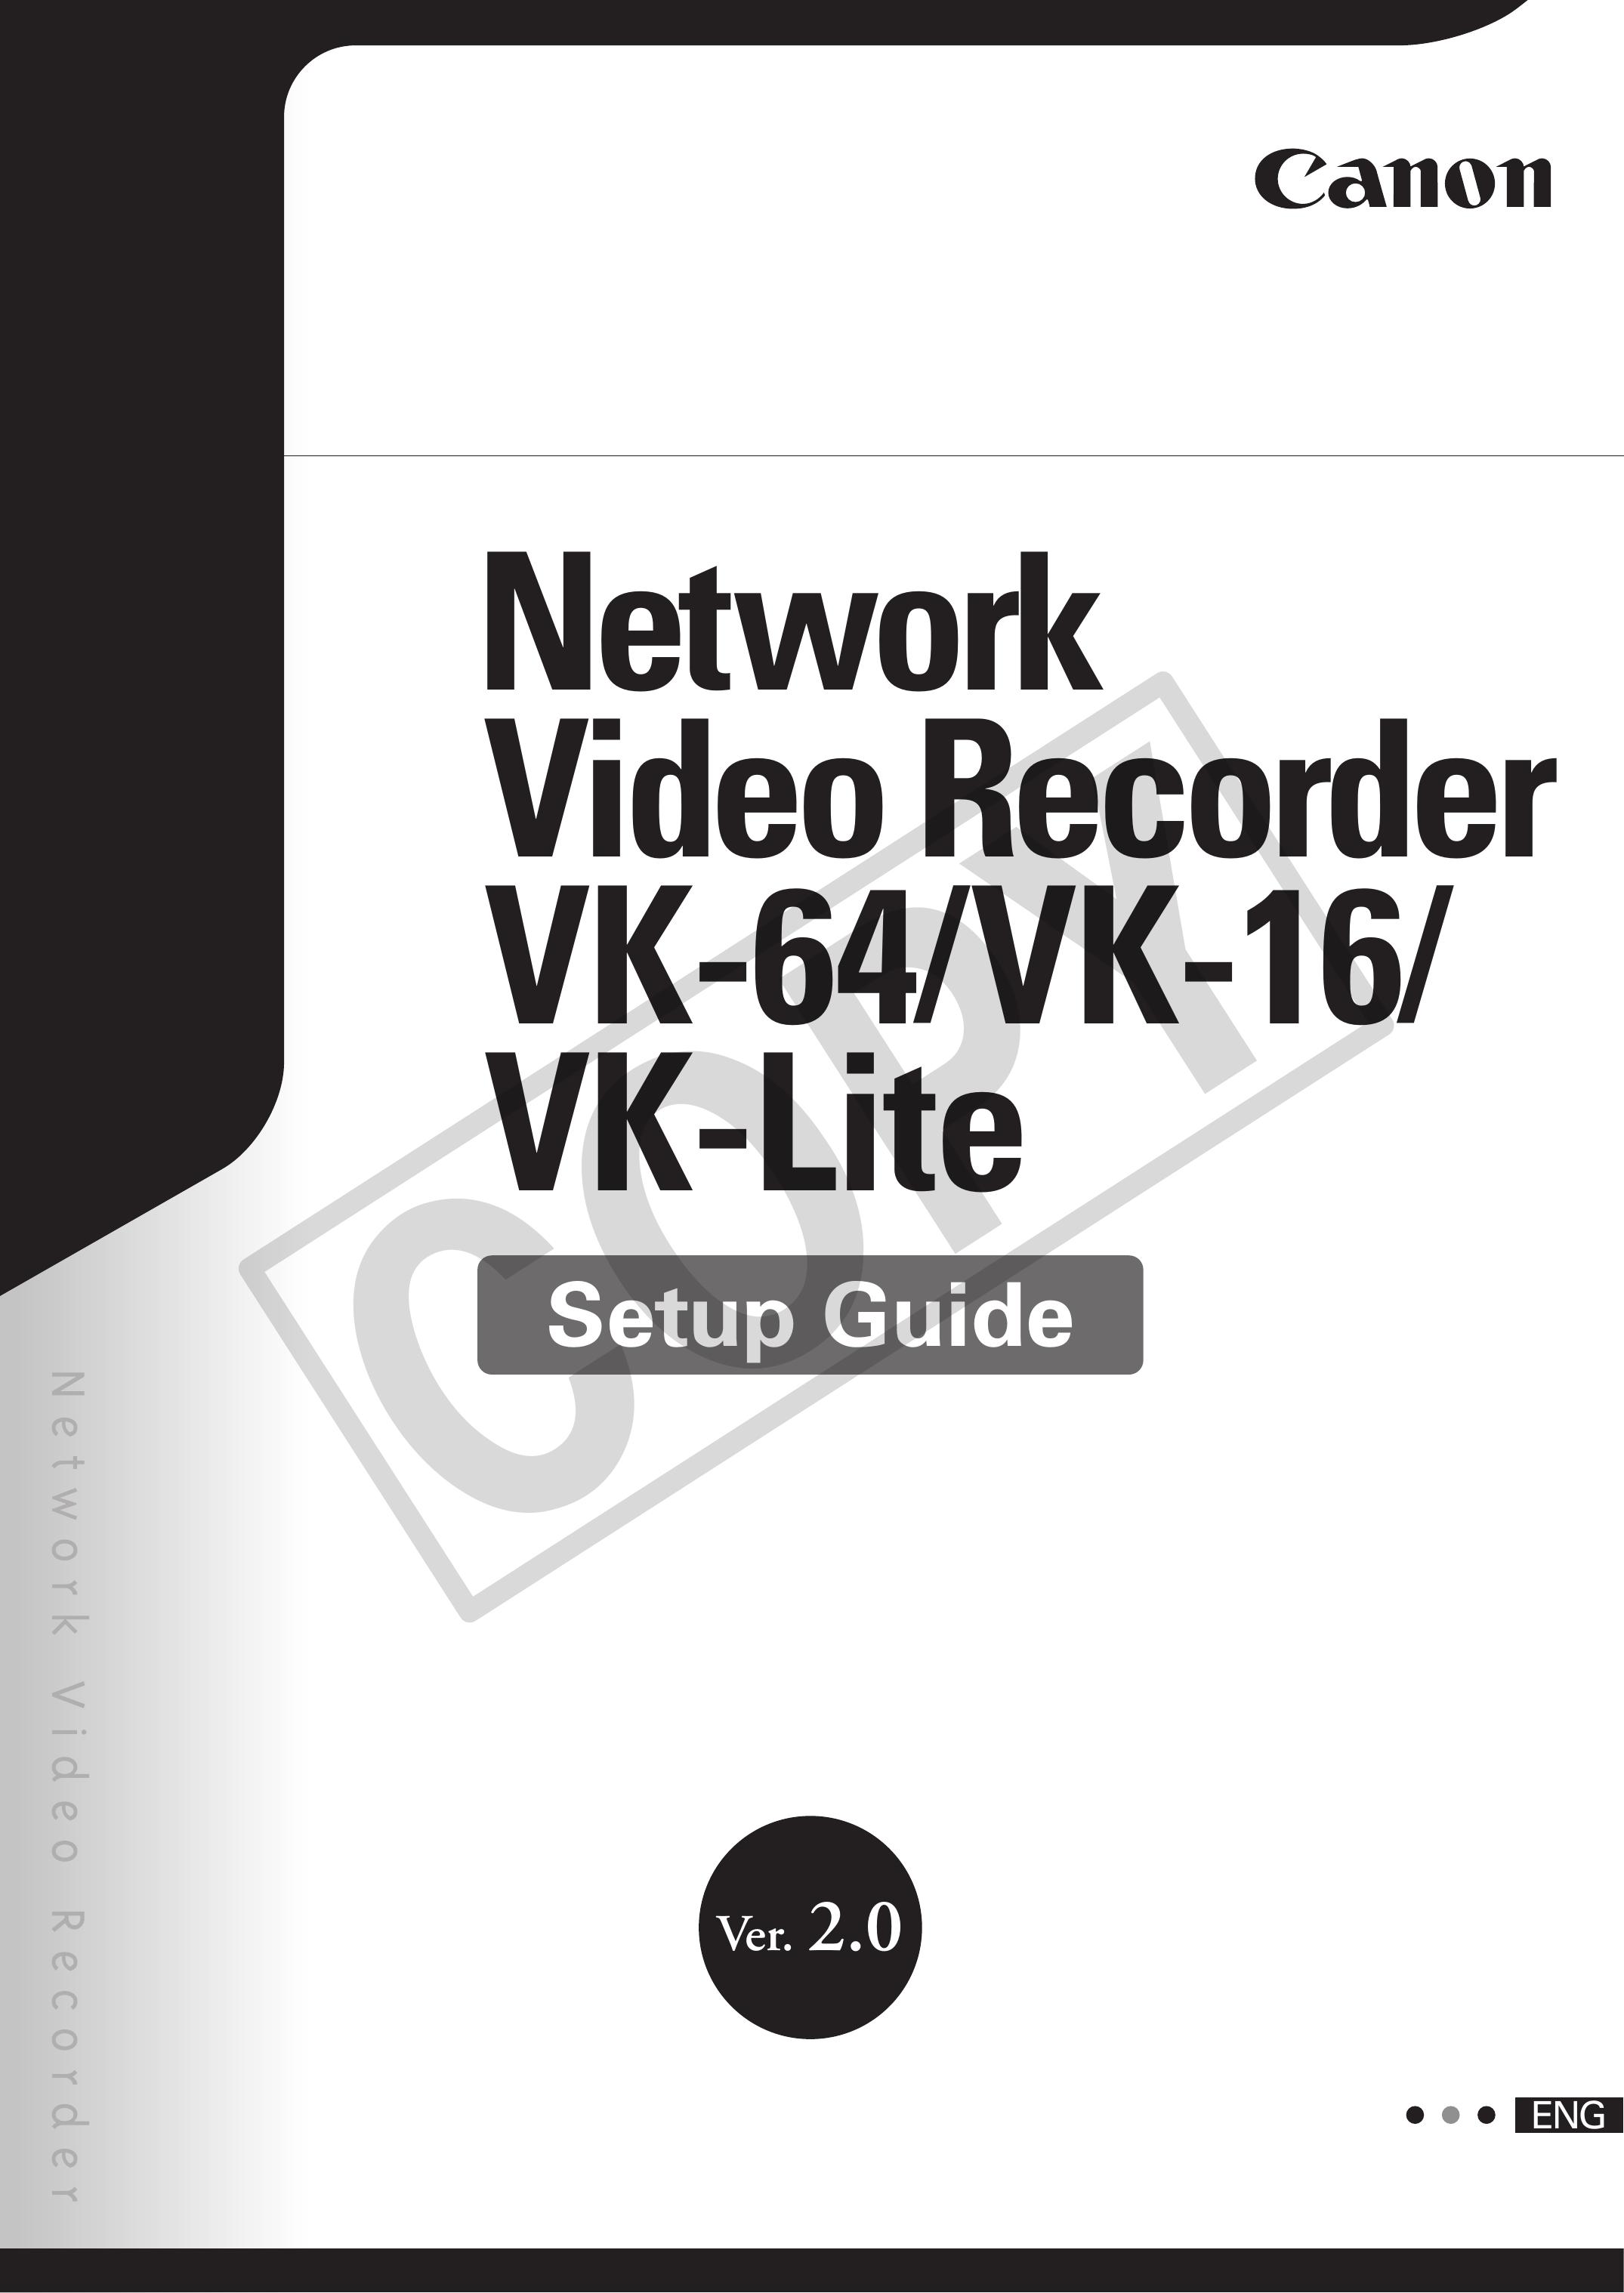 Canon VK-64 Security Camera User Manual